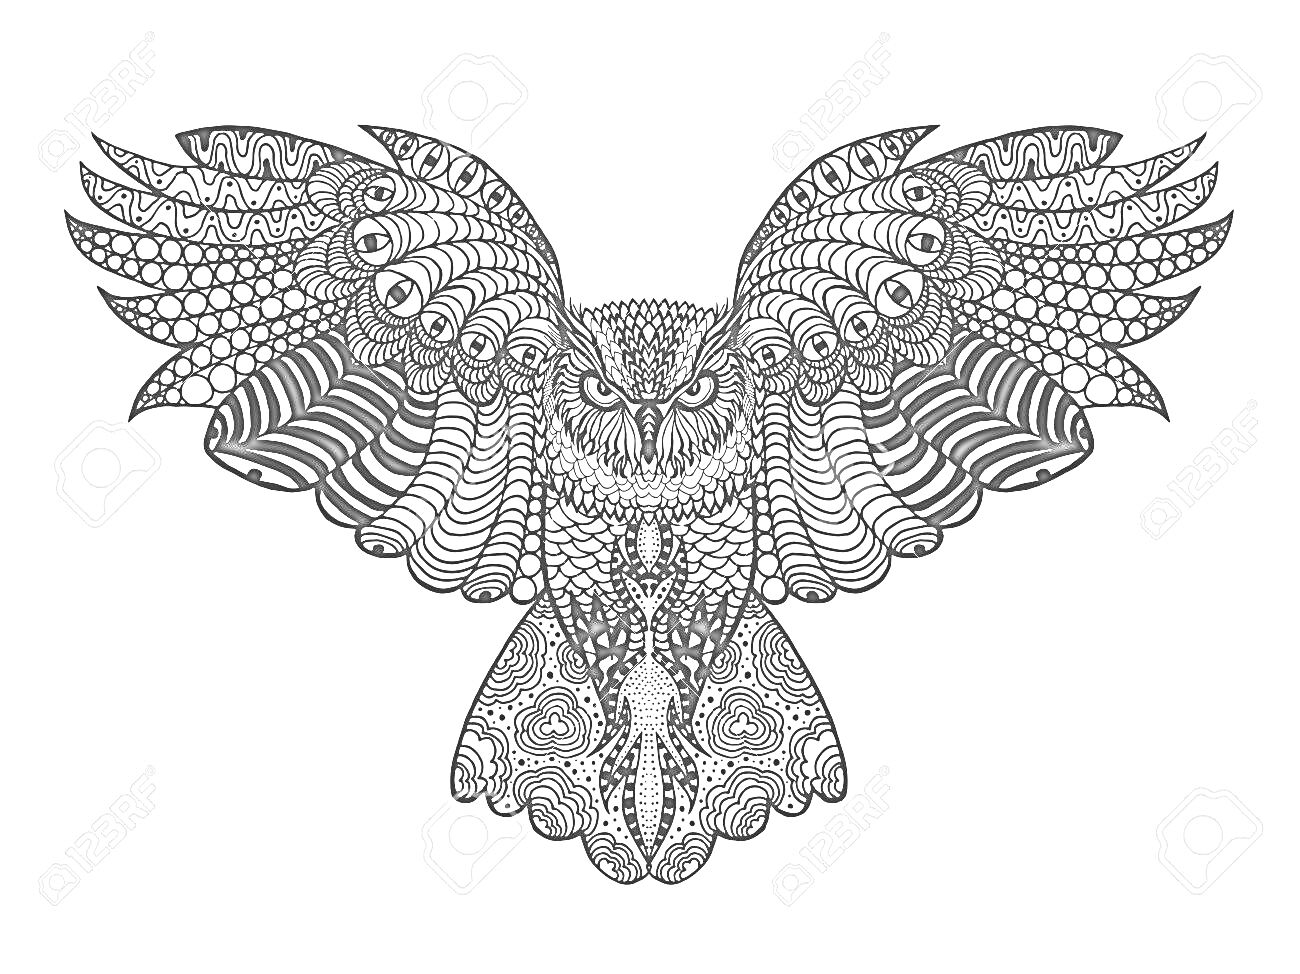 Раскраска Антистресс-раскраска с изображением совы с расправленными крыльями, выполненная в виде декоративного узора